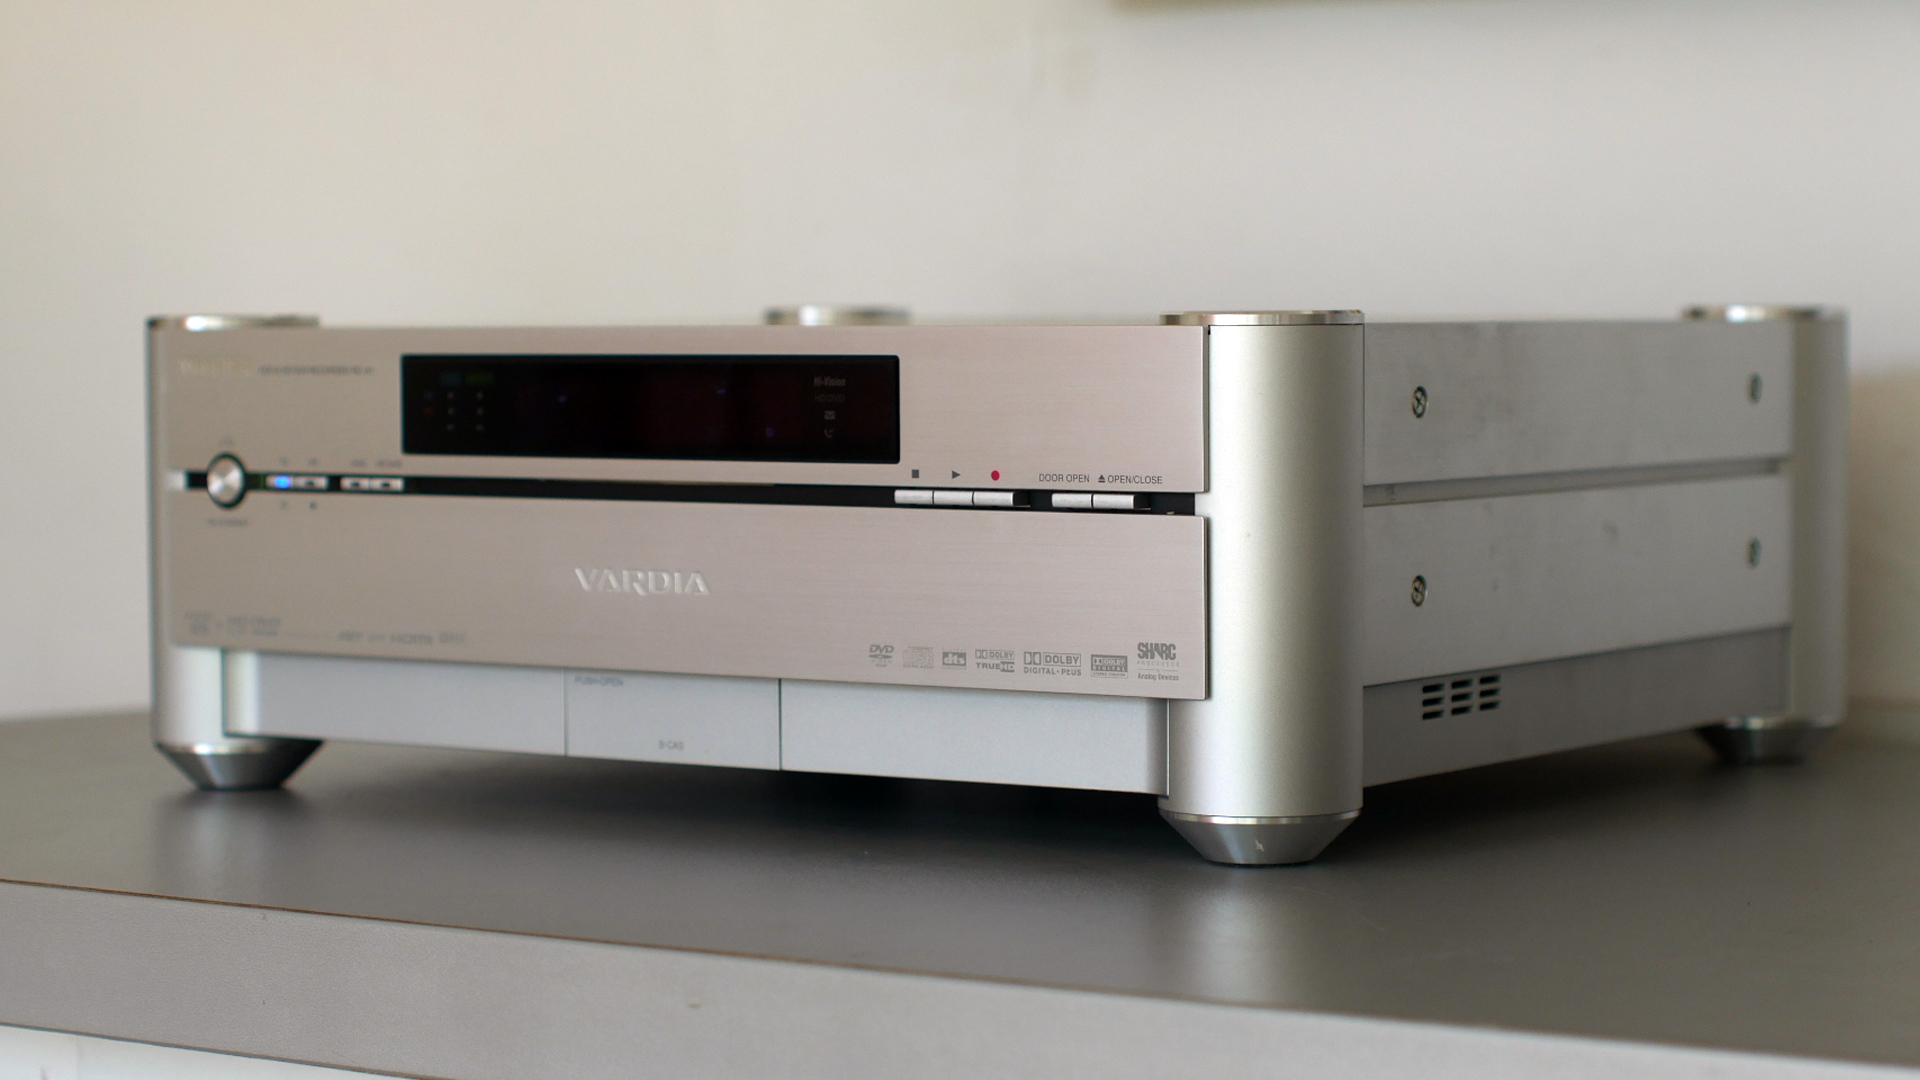 Первый гибрид PC и DVD рекордера. Премиальный Toshiba RD-A1 VARDIA.